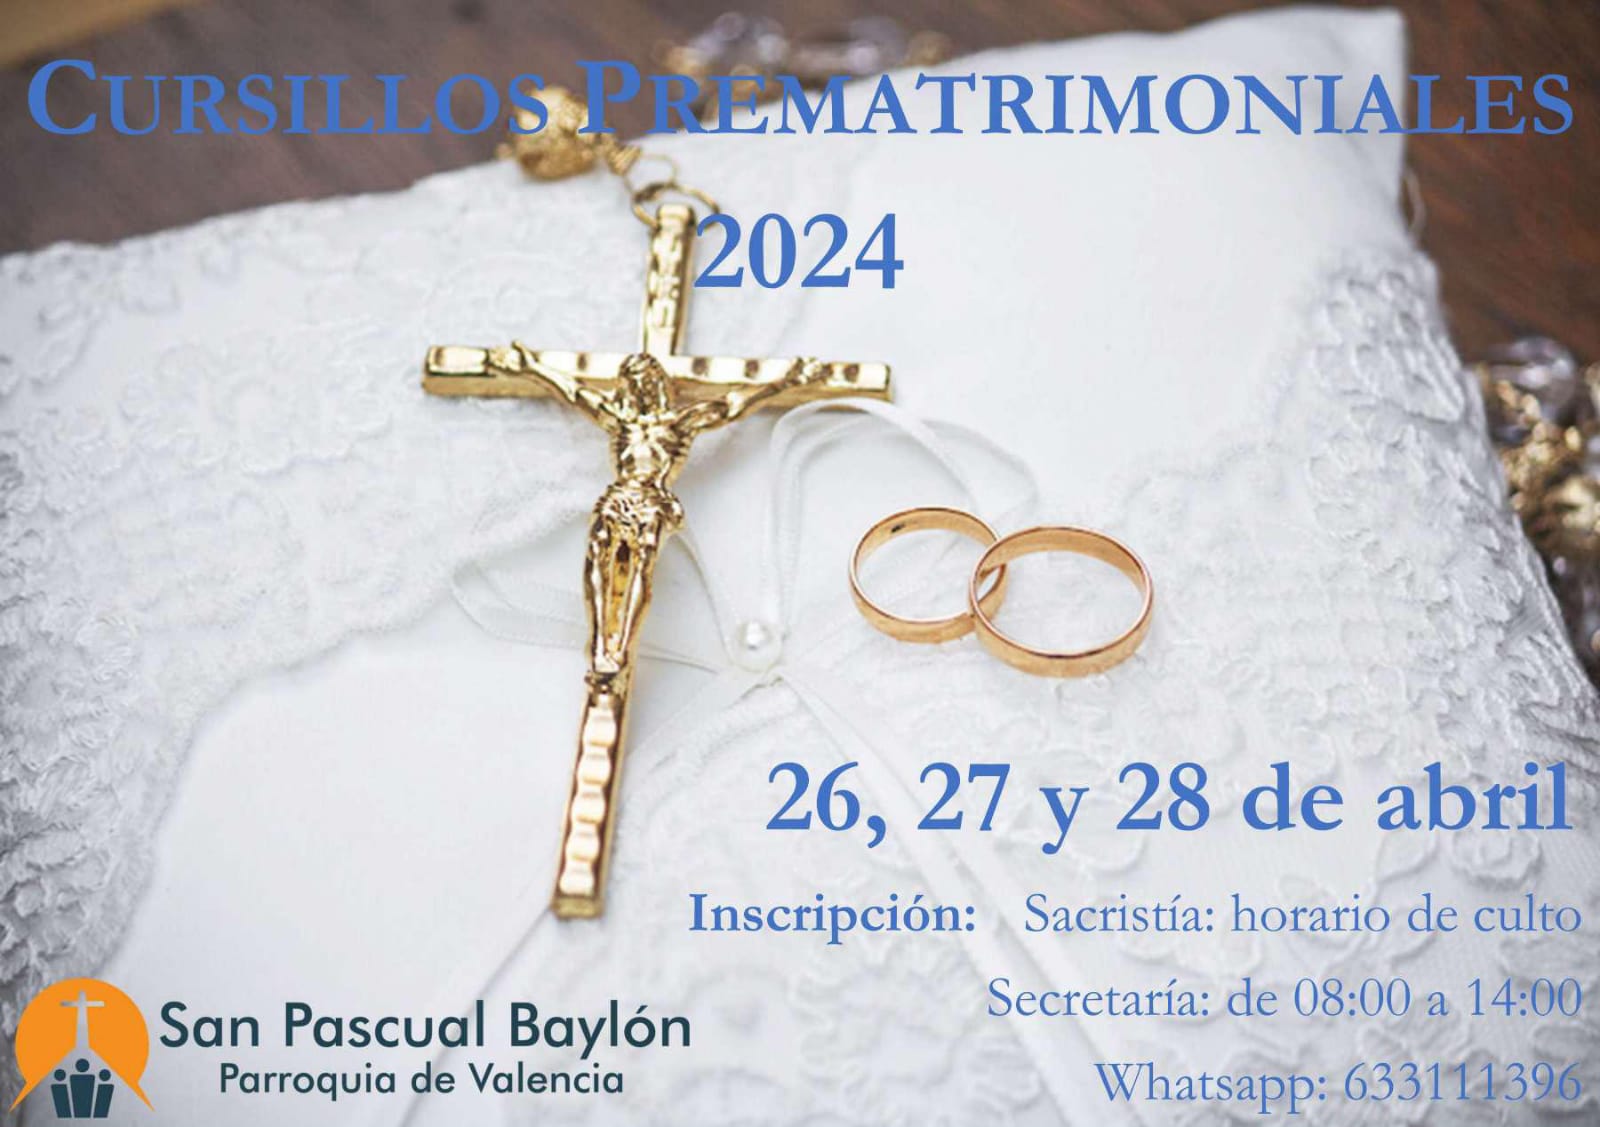 Cursillos prematrimoniales abril 2024 San Pascual Baylón